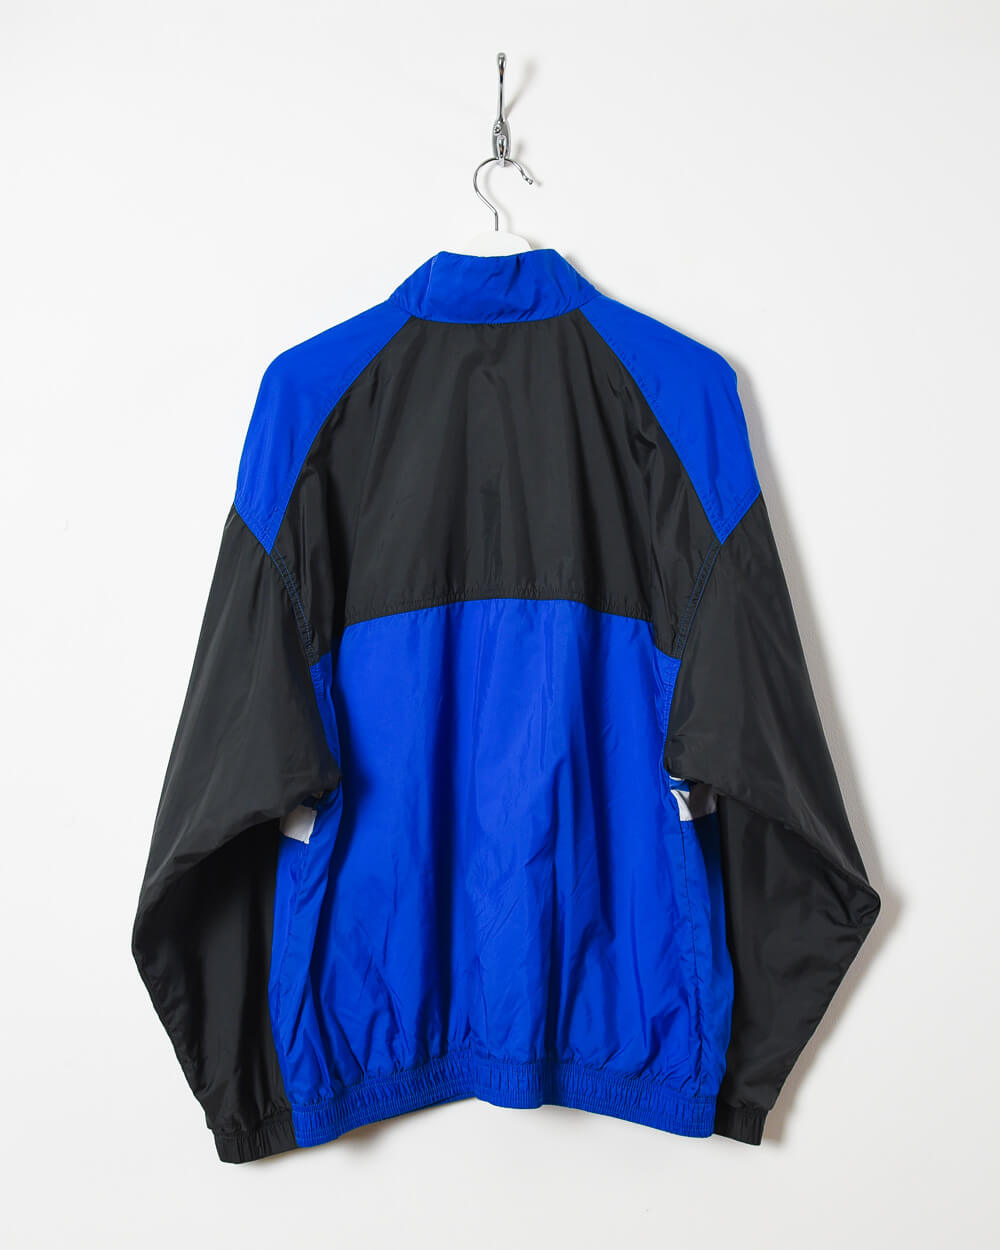 Nike USA Windbreaker Jacket - Large - Domno Vintage 90s, 80s, 00s Retro and Vintage Clothing 